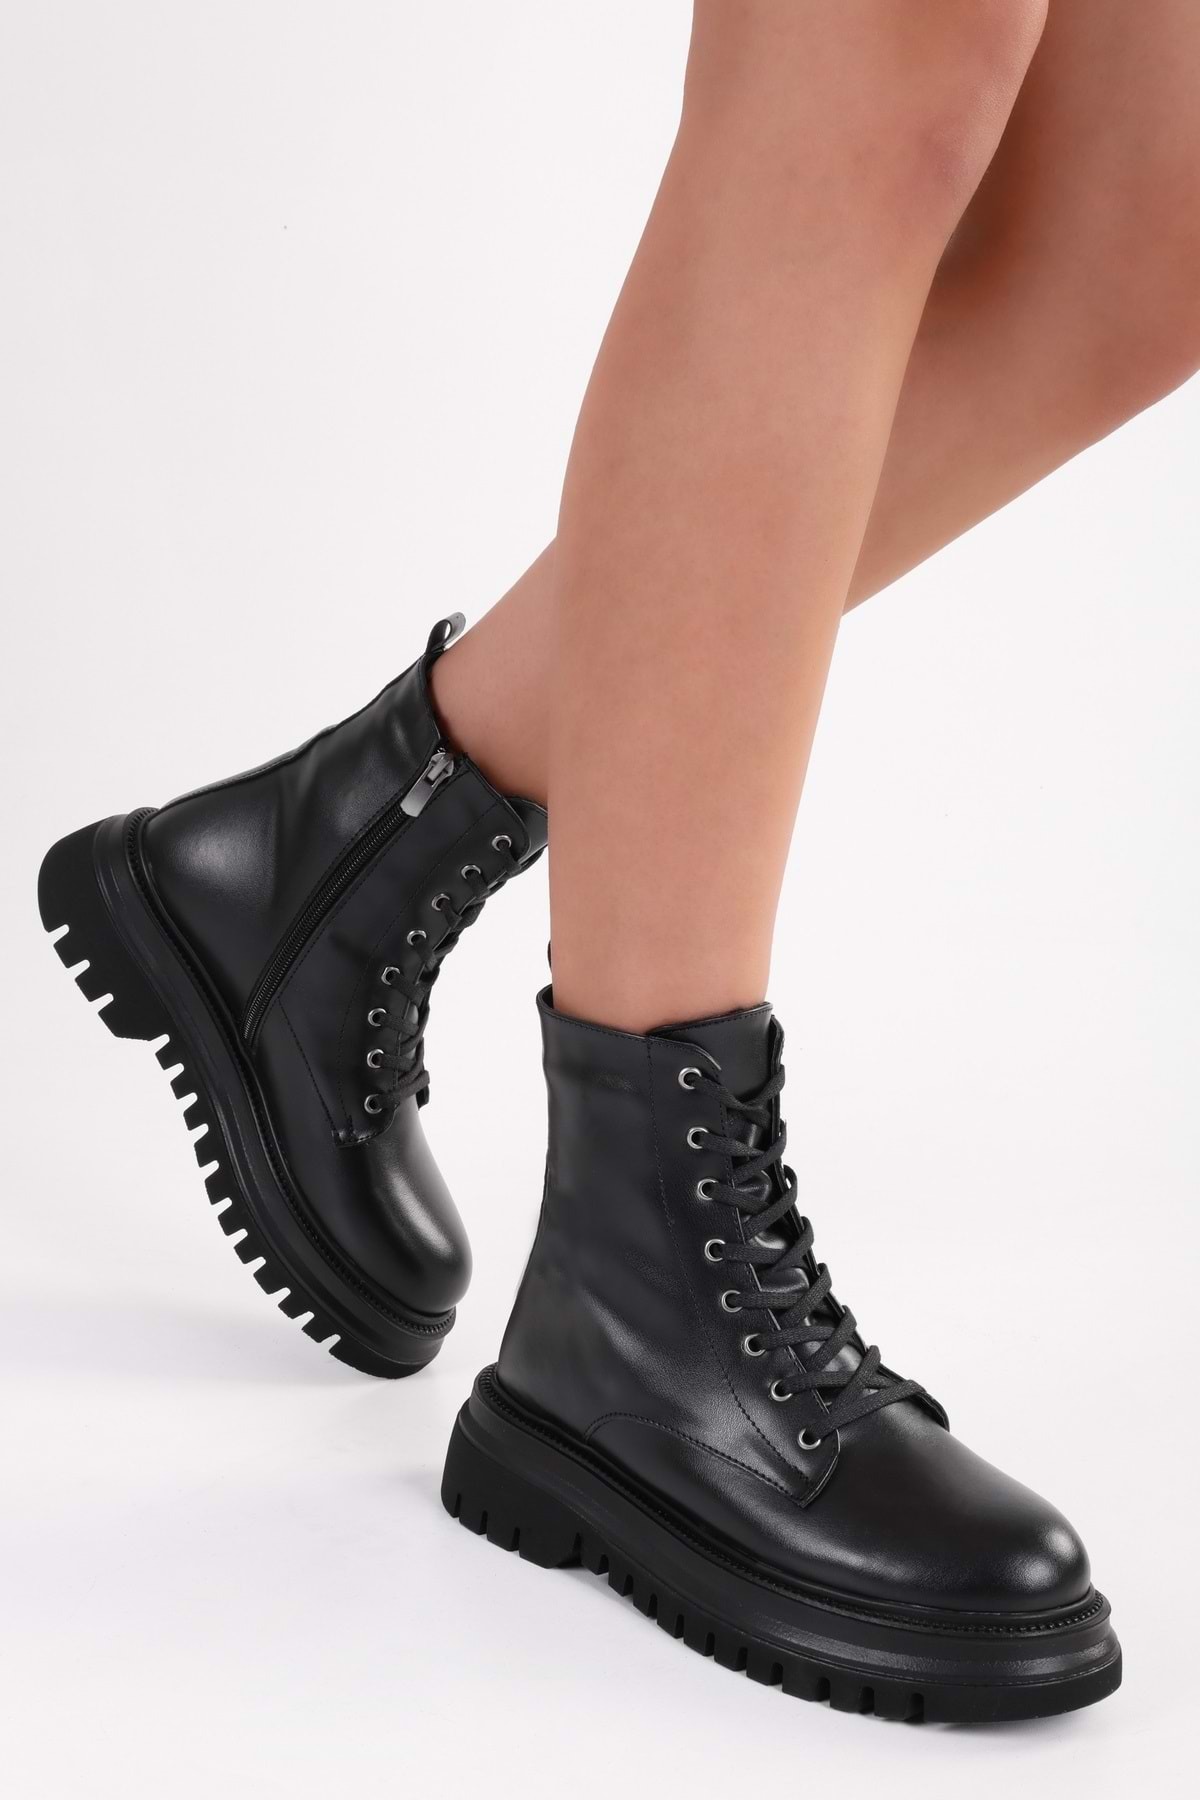 Shoeberry Women's Joop Black Lace-Up Thick Sole Boots